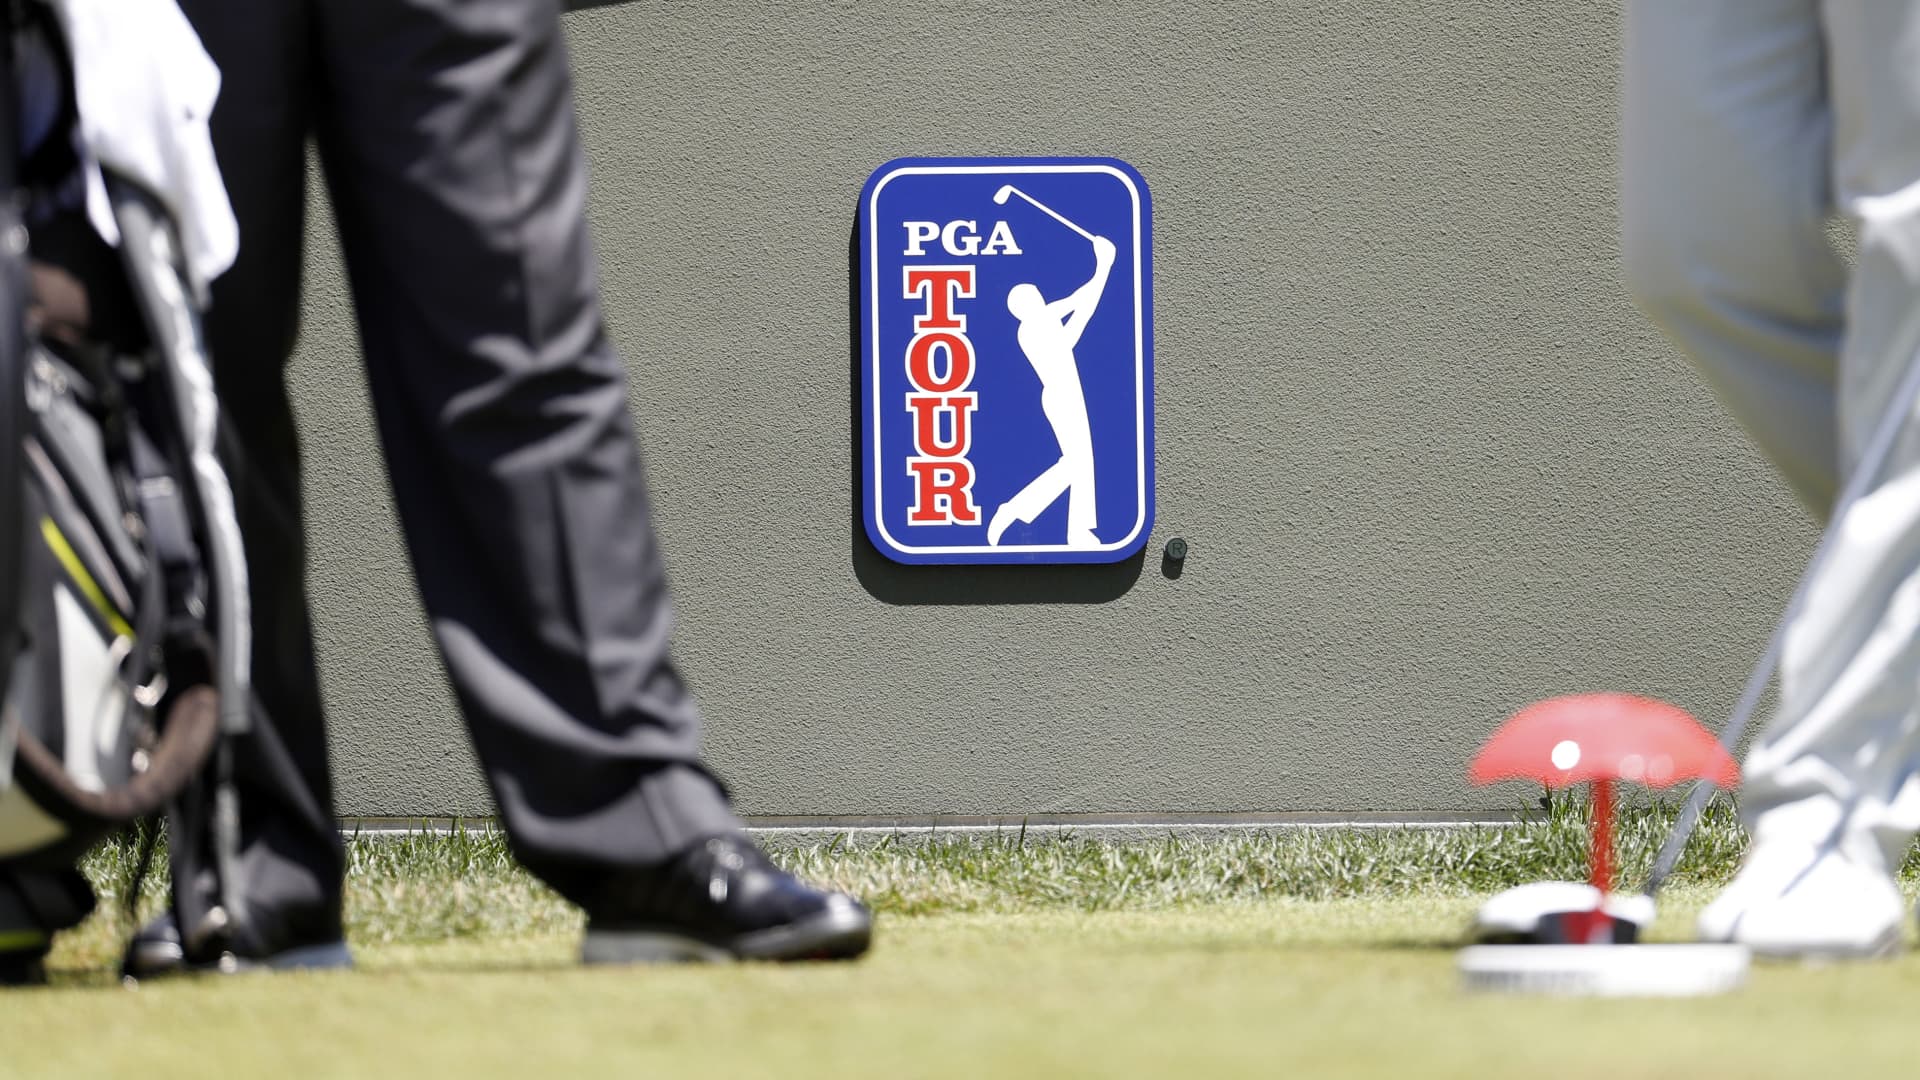 PGA Tour plans to testify at Senate hearing on LIV merger